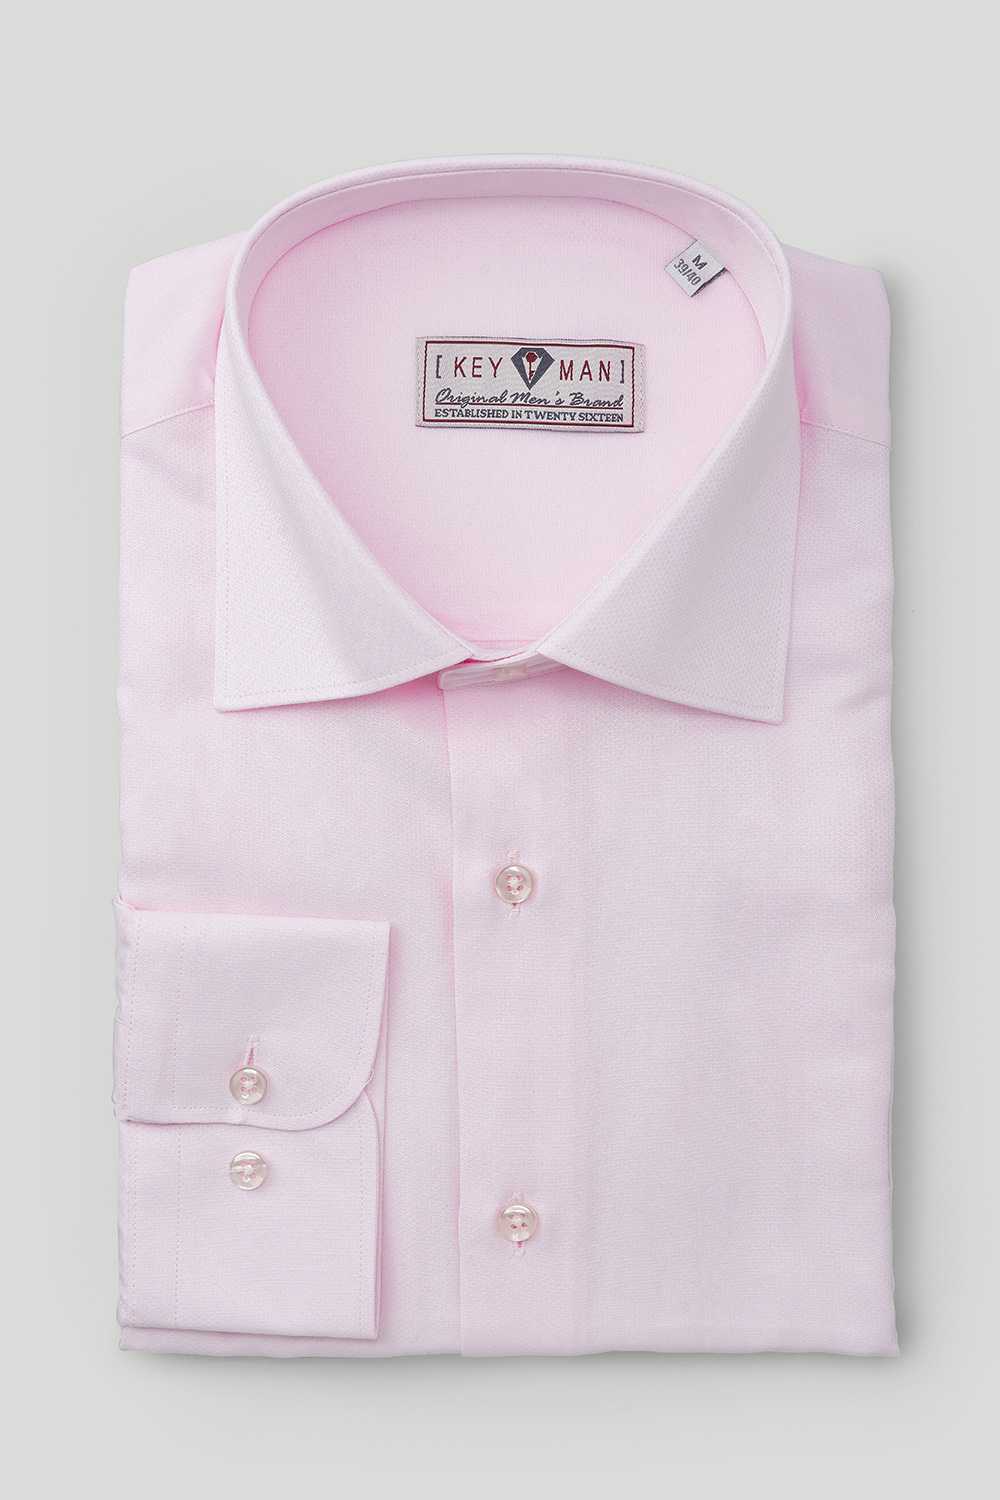 Рубашка мужская розовая, классика воротник